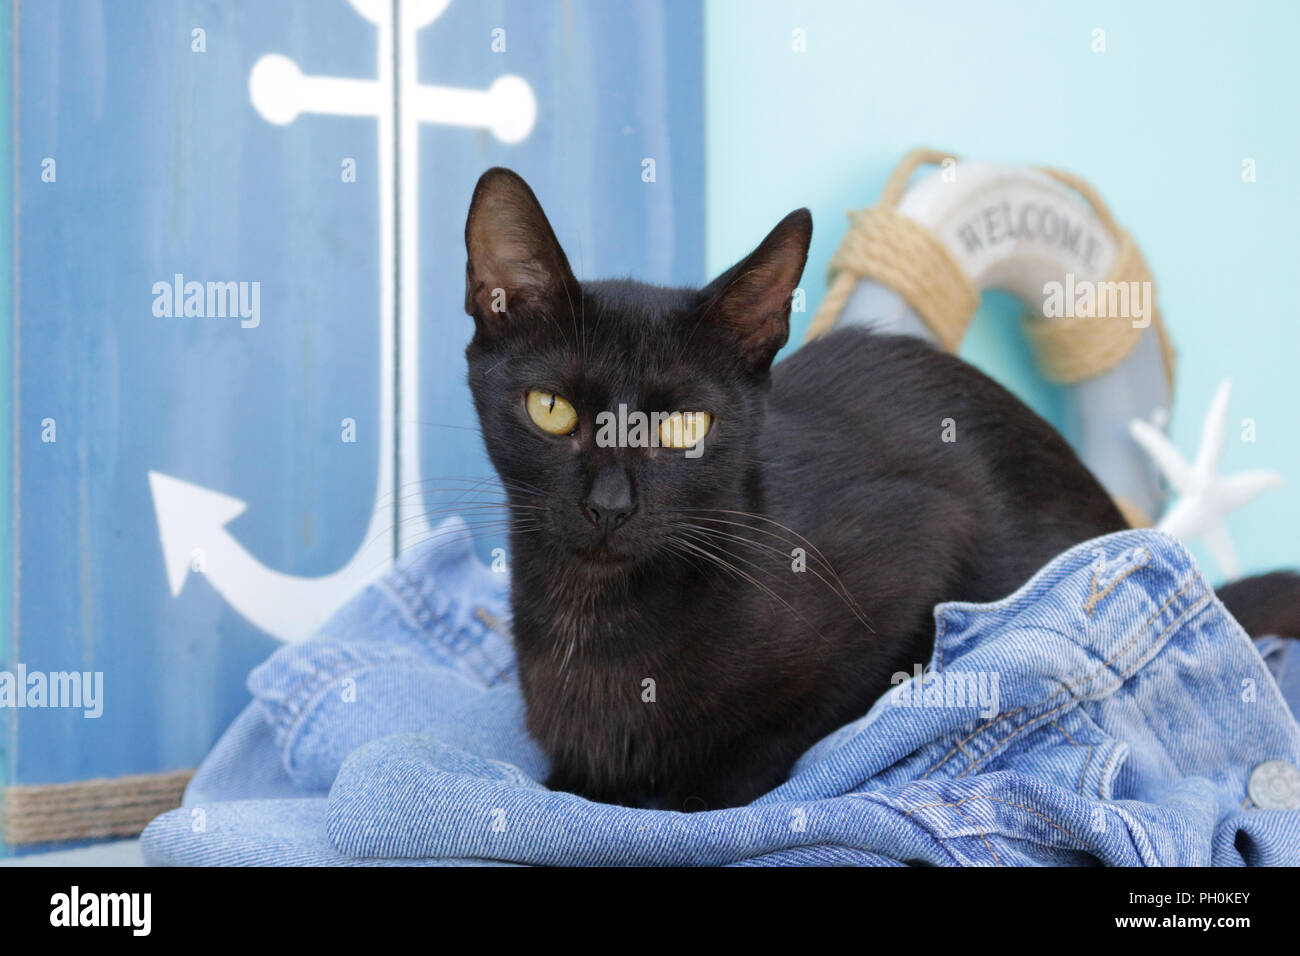 Gato negro acostado en un blue jeans Foto de stock